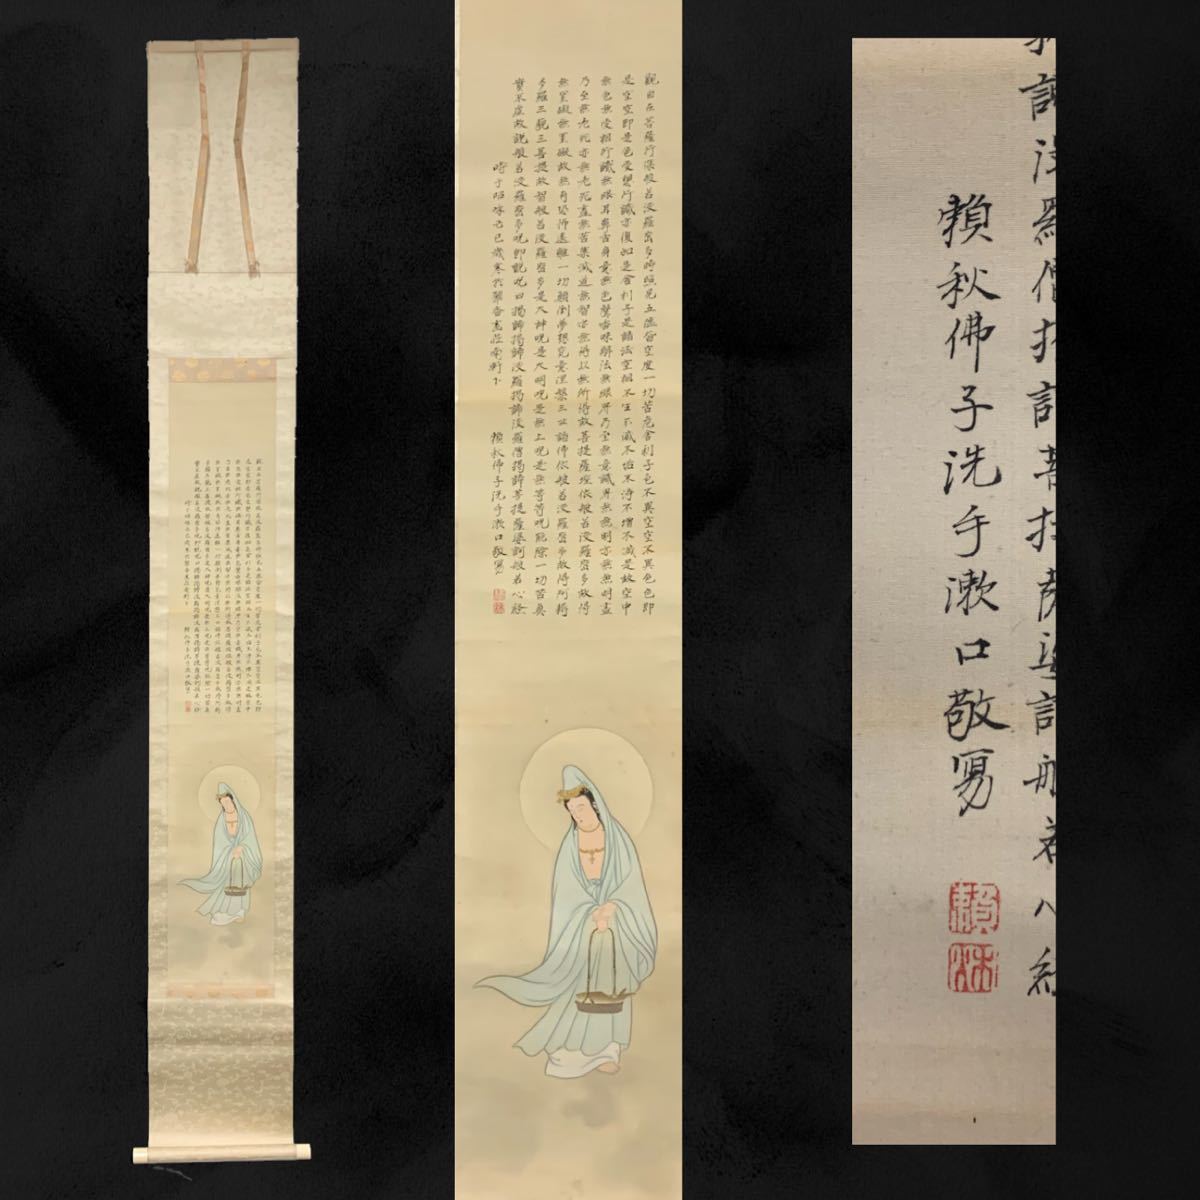 [复制品] (71g) 赖明观世音菩萨佛教绘画佛教艺术丝绸书盒约。 195 x 25 厘米 (0803R0507247), 绘画, 日本画, 人, 菩萨